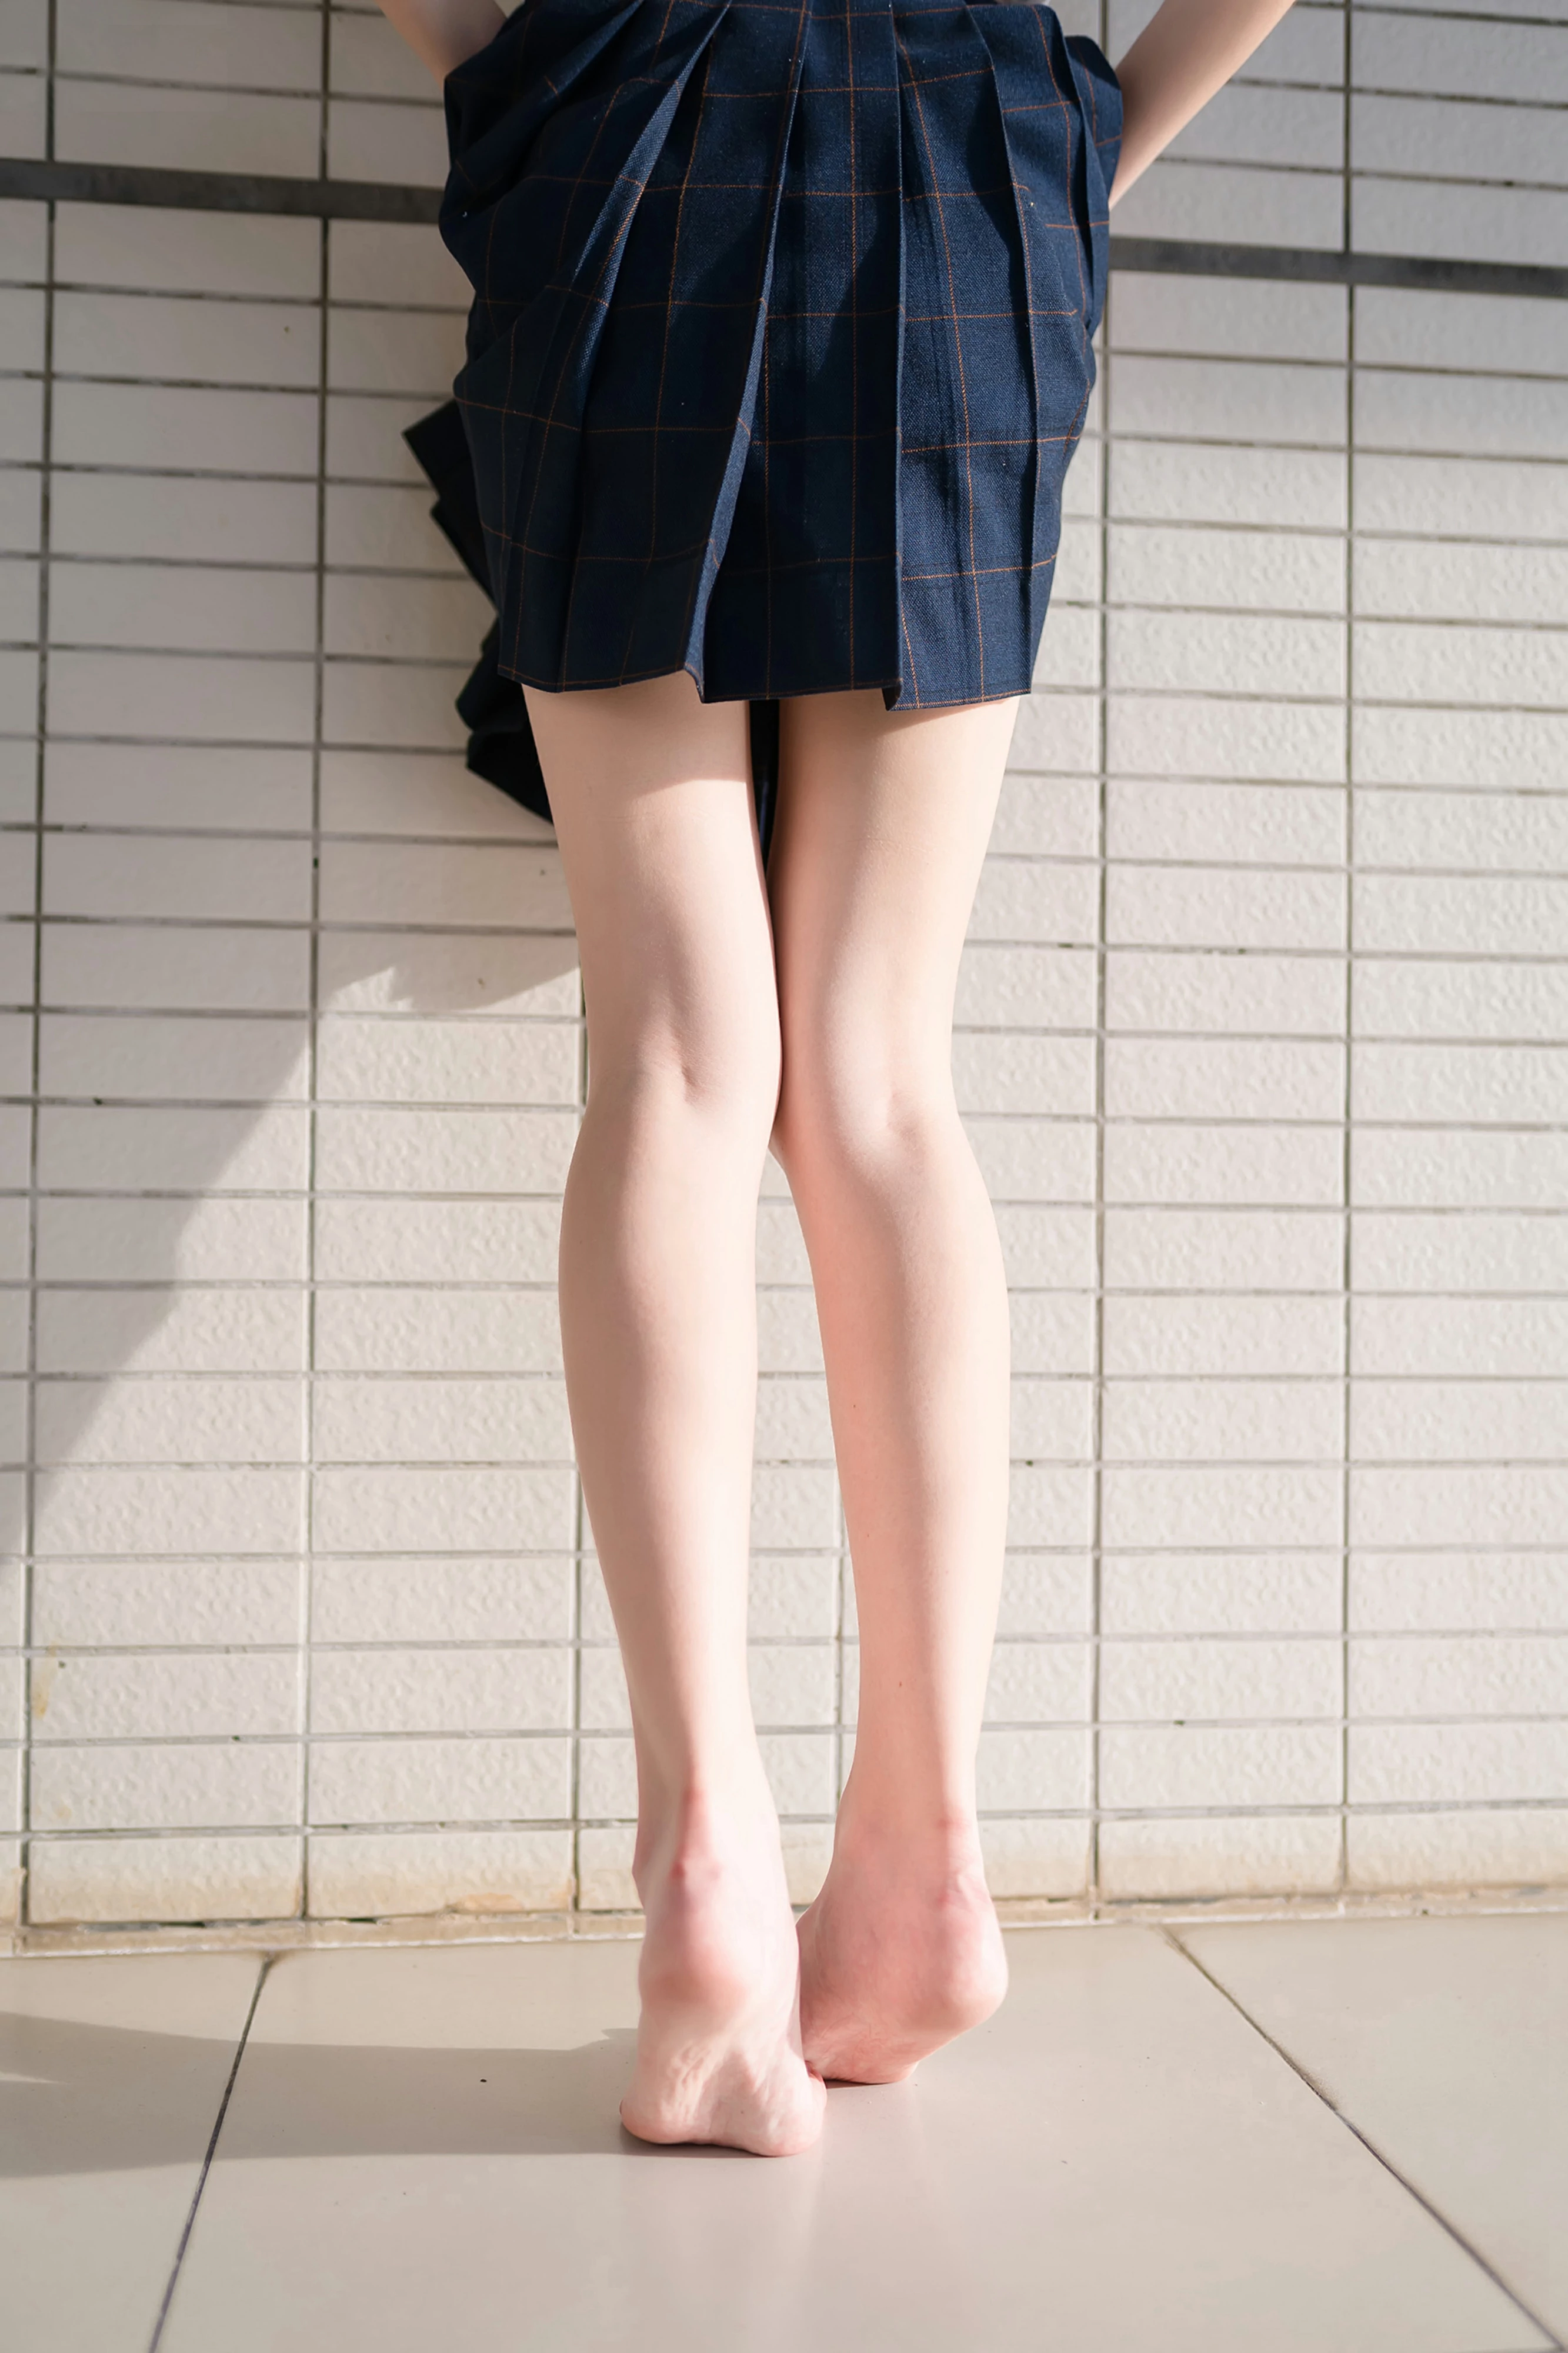 [风之领域]NO.070 性感高中女生白色短袖与格子短裙加黑色丝袜美腿私房写真集,